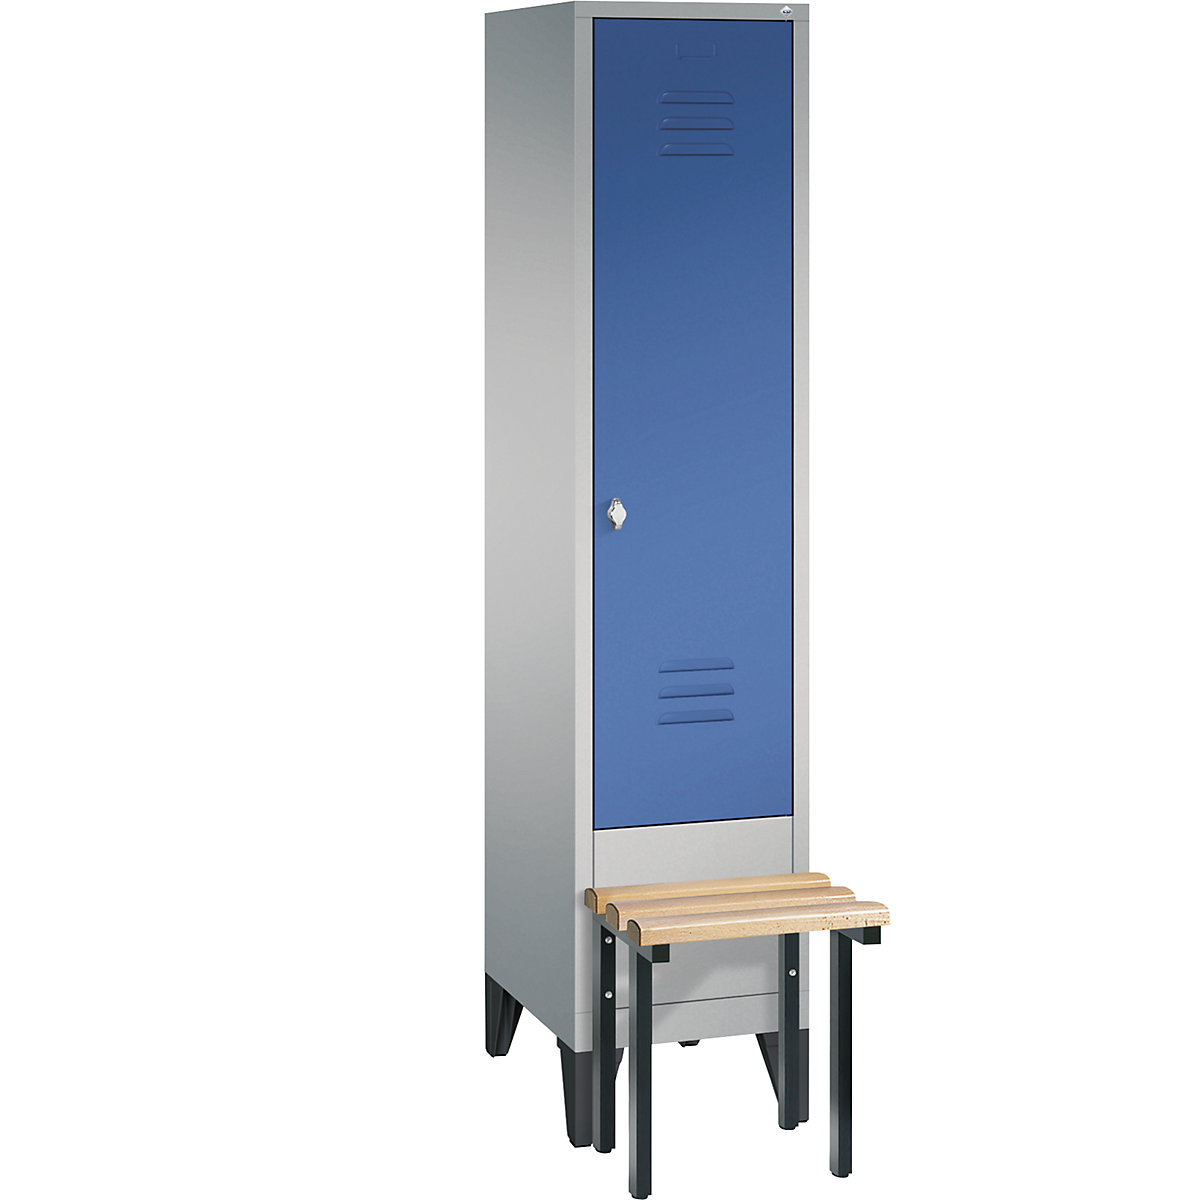 Šatní skříň CLASSIC s předsazenou lavicí – C+P, 1 oddíl, šířka oddílu 400 mm, bílý hliník / enciánová modrá-14